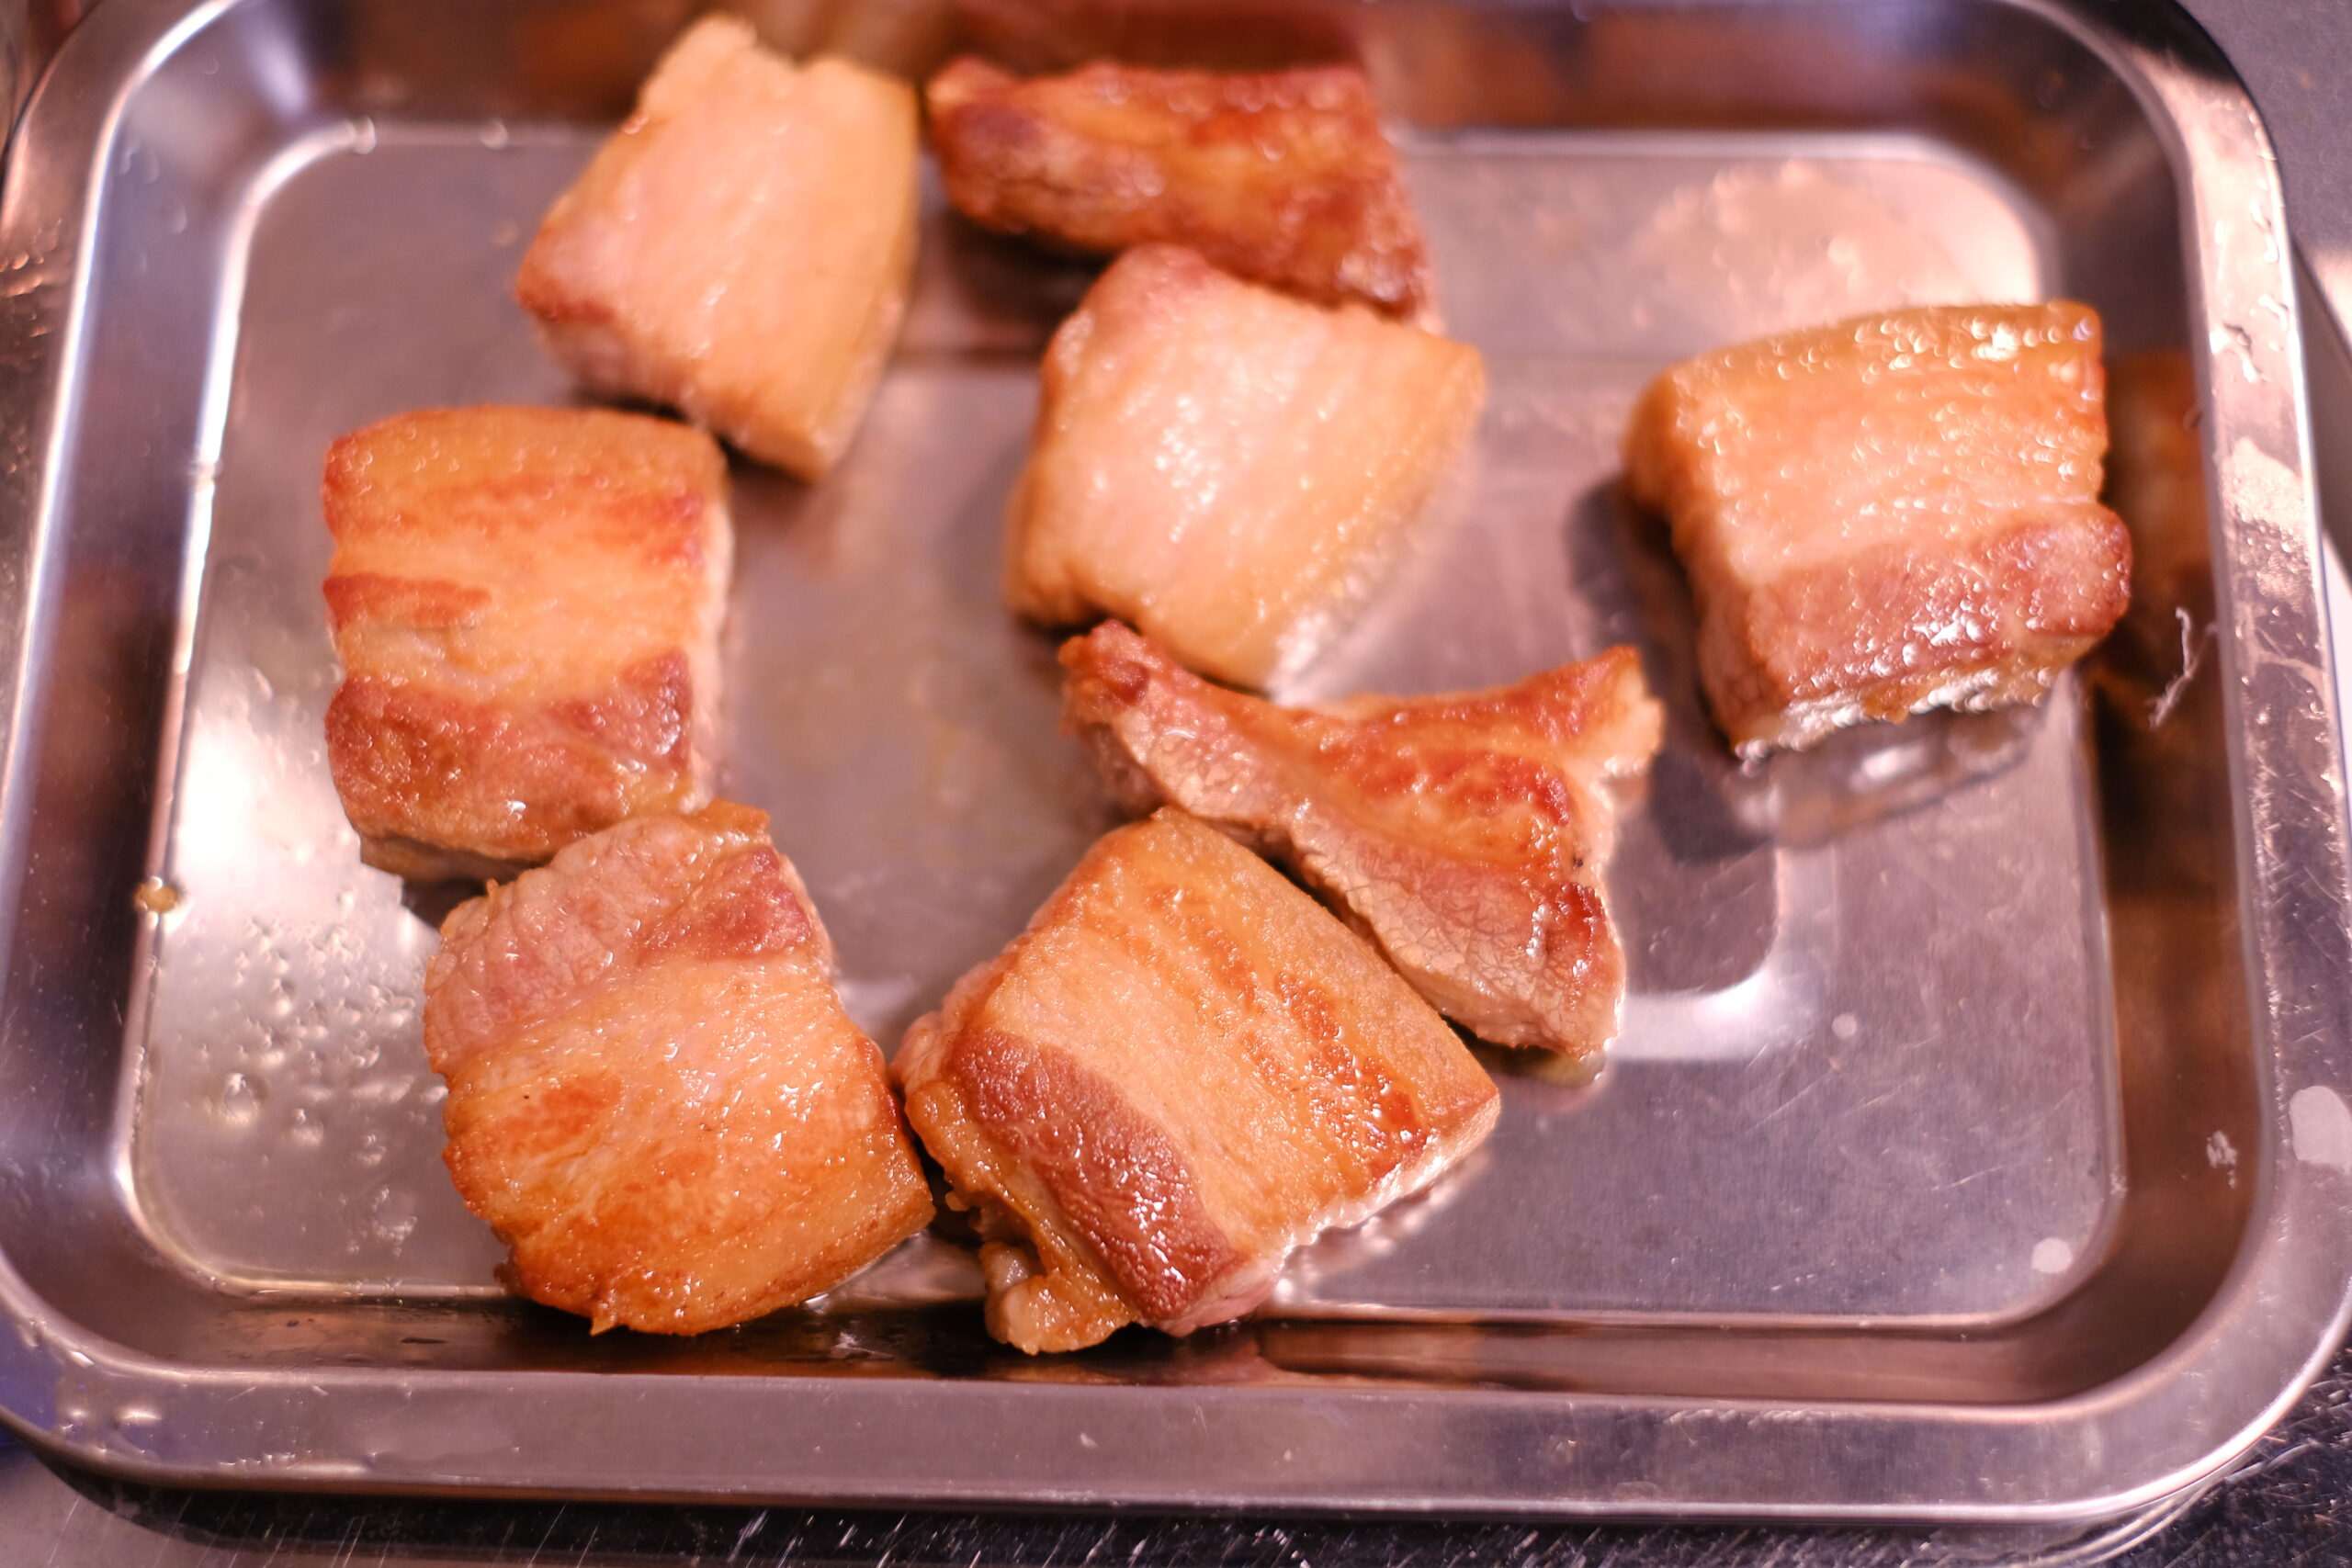 こんがりと焼き色をつけた豚バラ肉の画像です